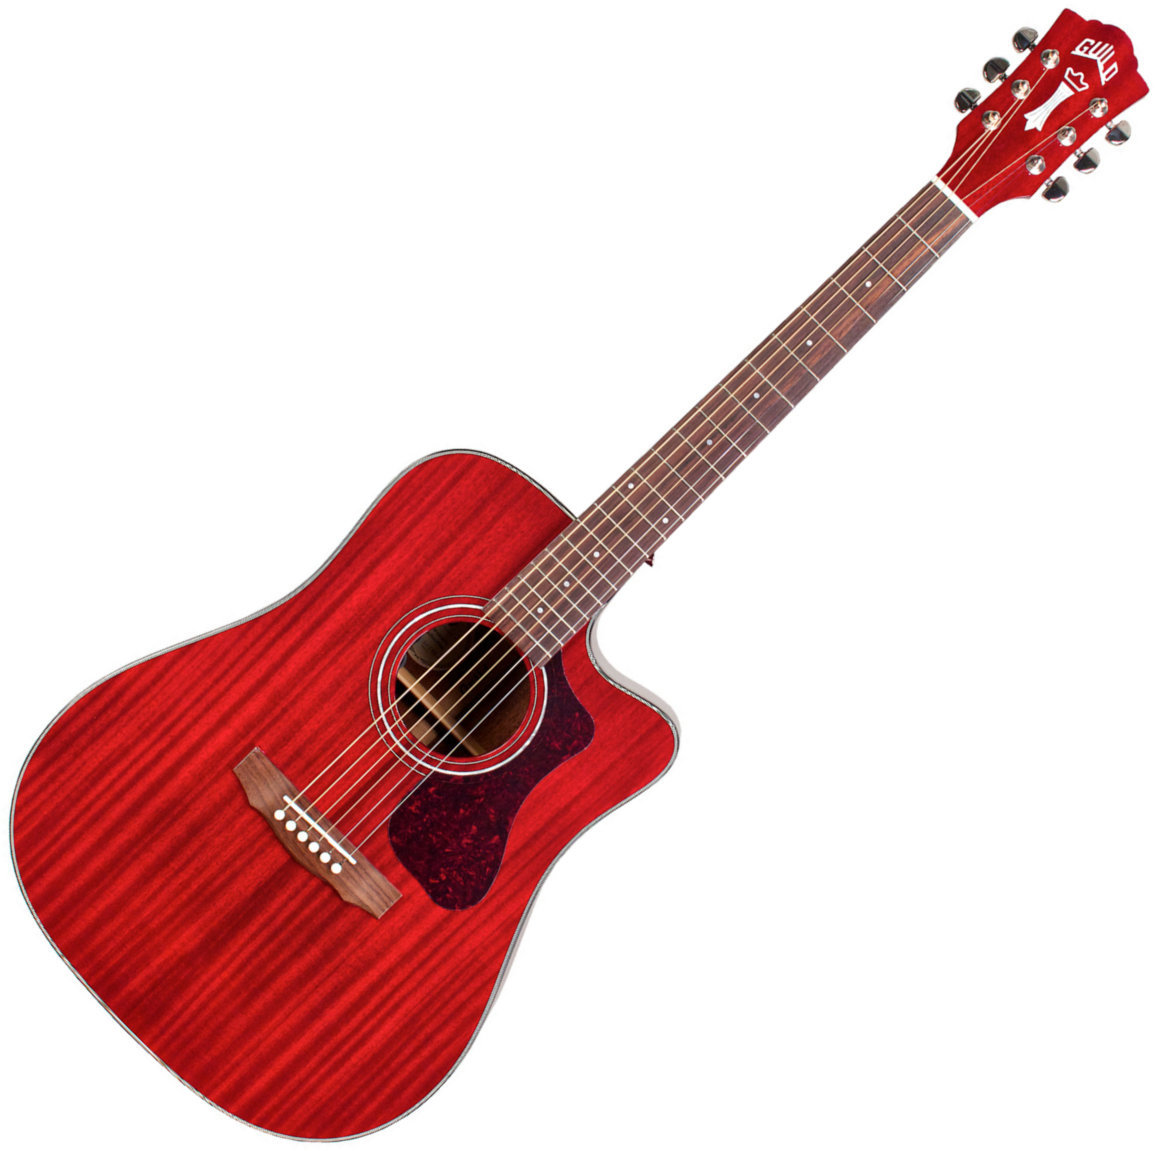 Ακουστική Κιθάρα Guild D-120 Cherry Red